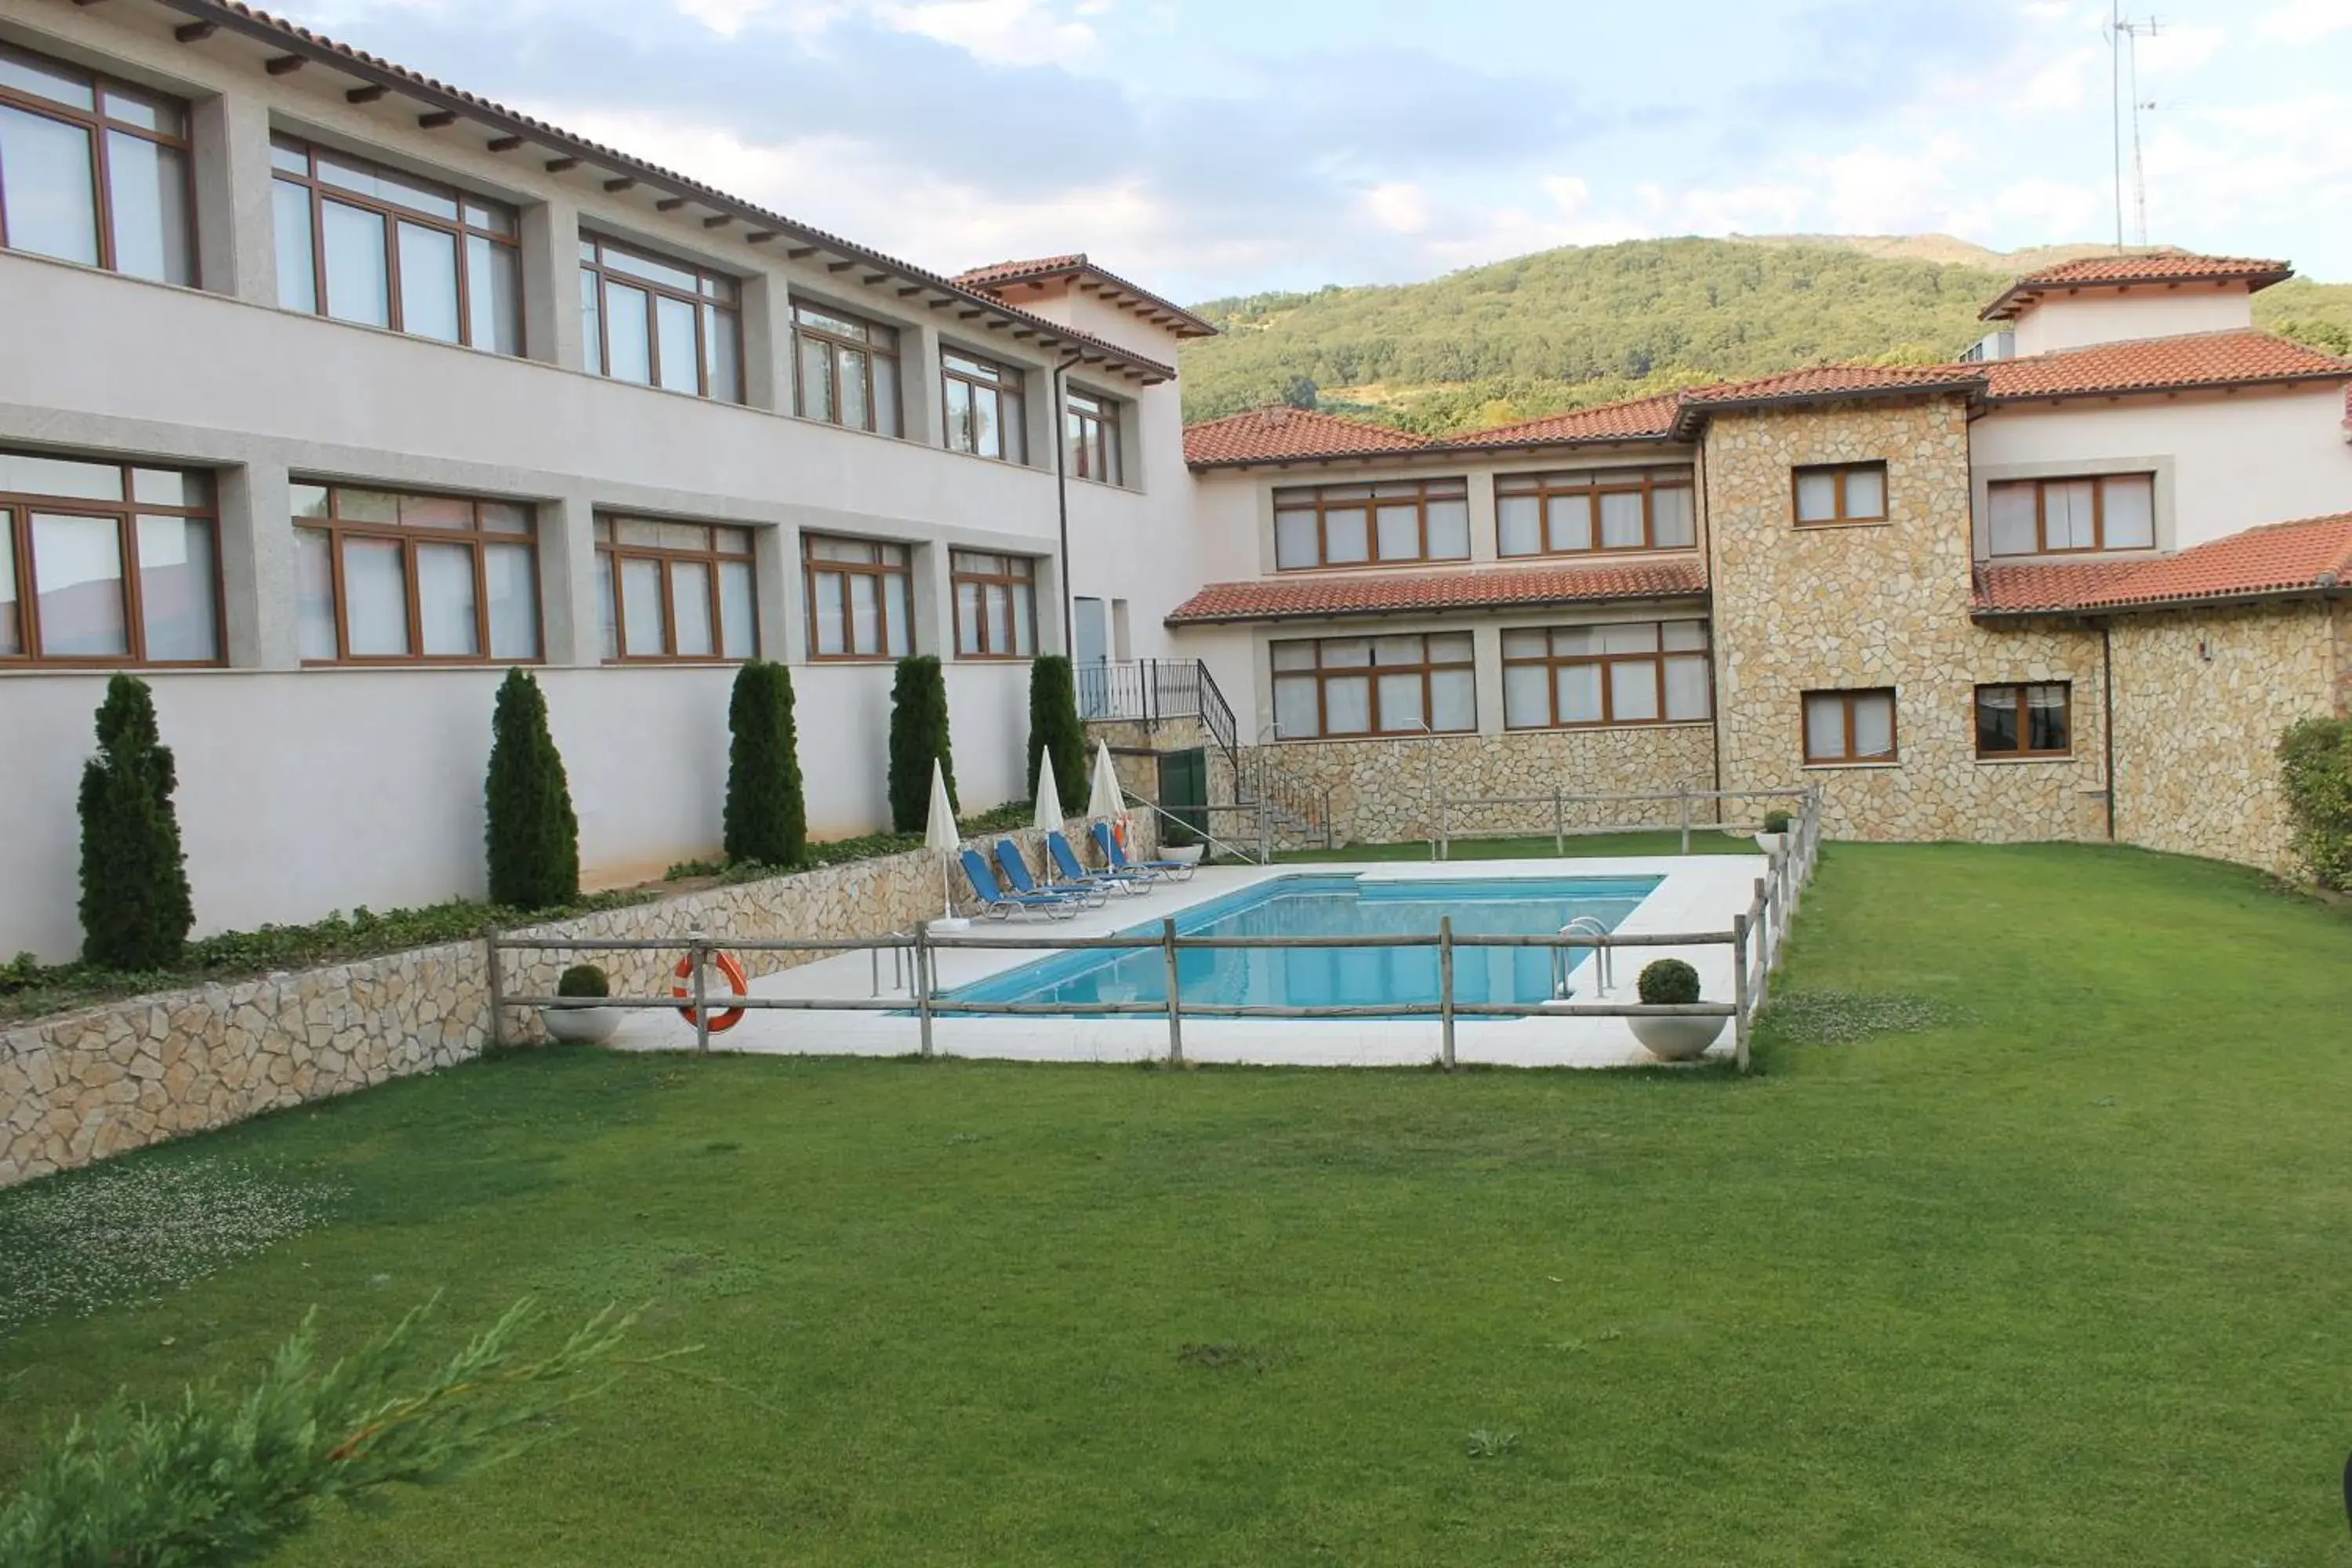 Property building, Swimming Pool in Mirador de La Portilla